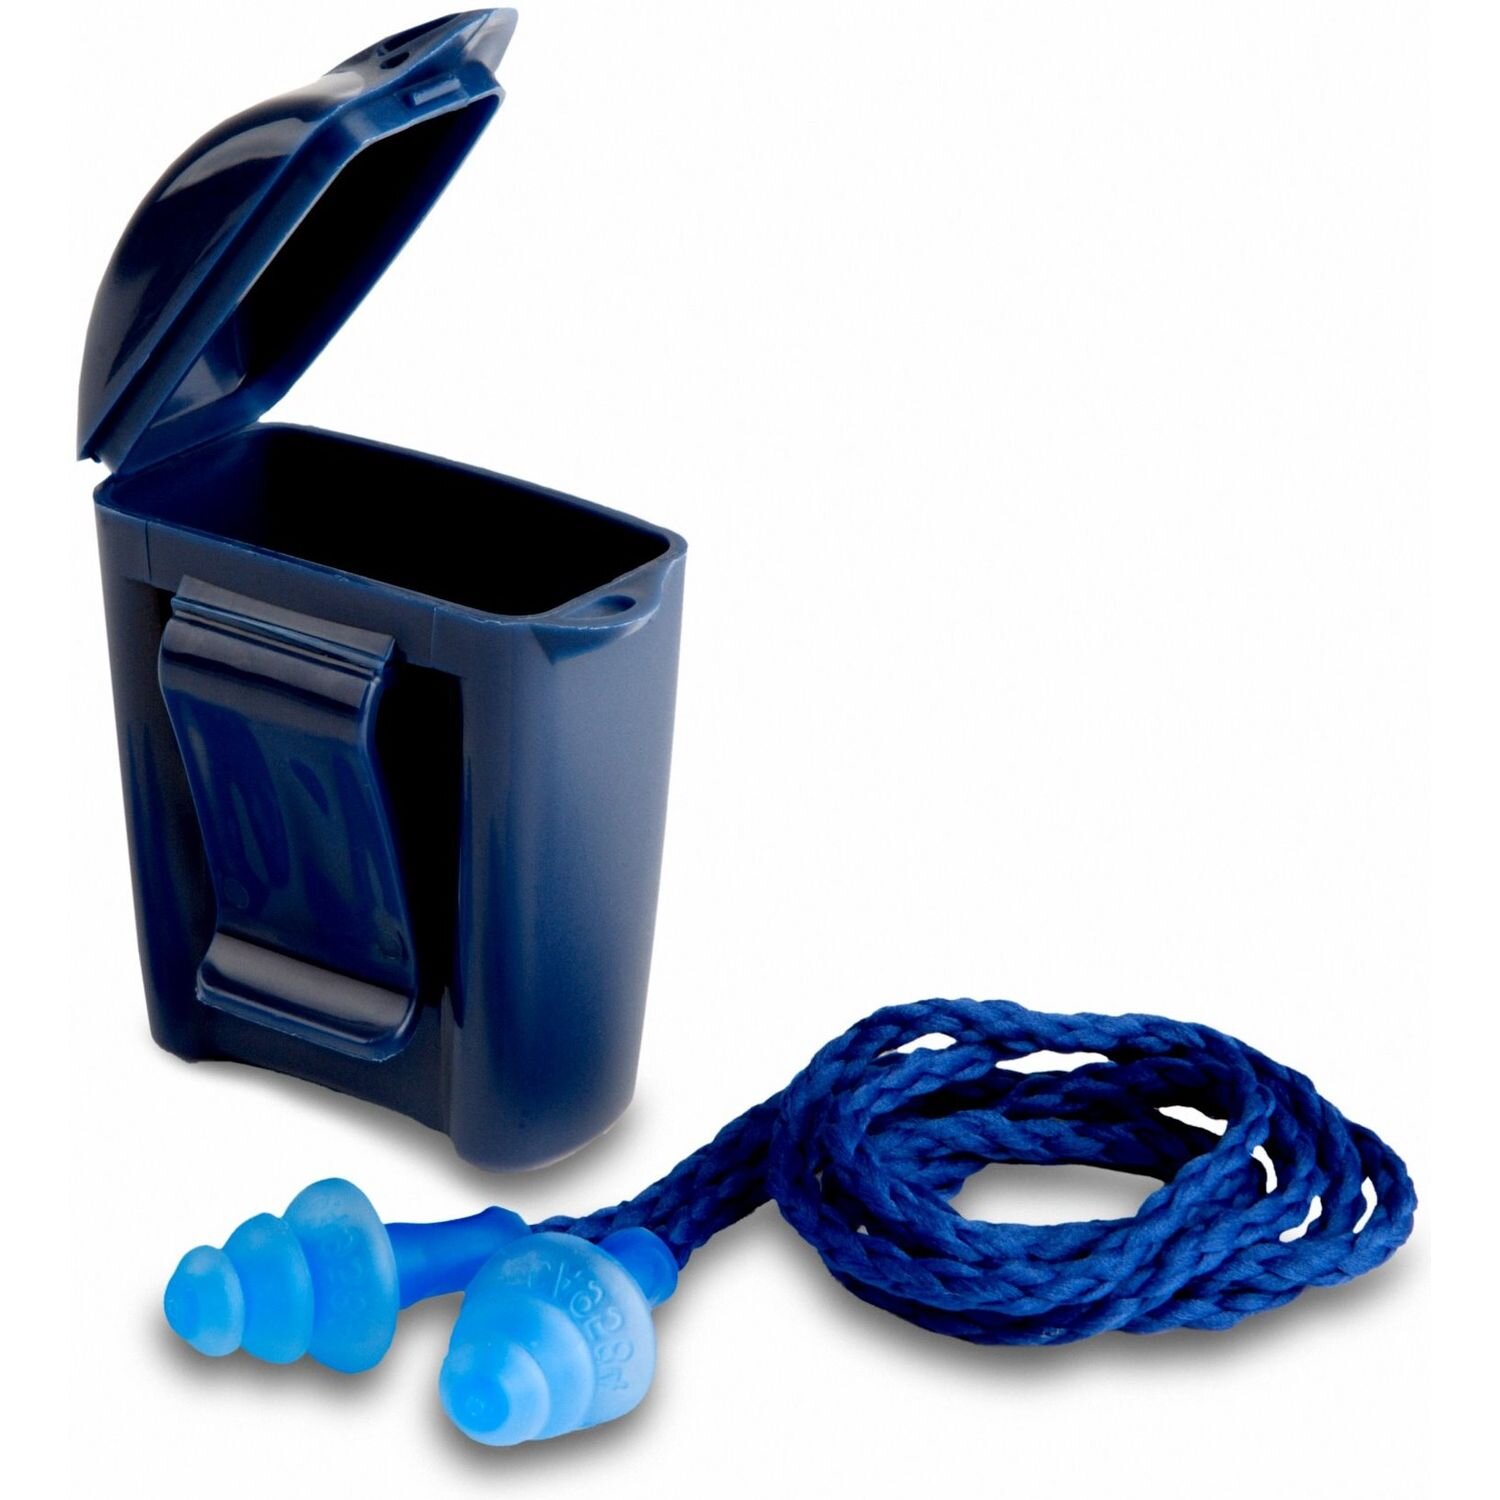 3M 1291 Blue Corded Earplug & Case - Ctn 250